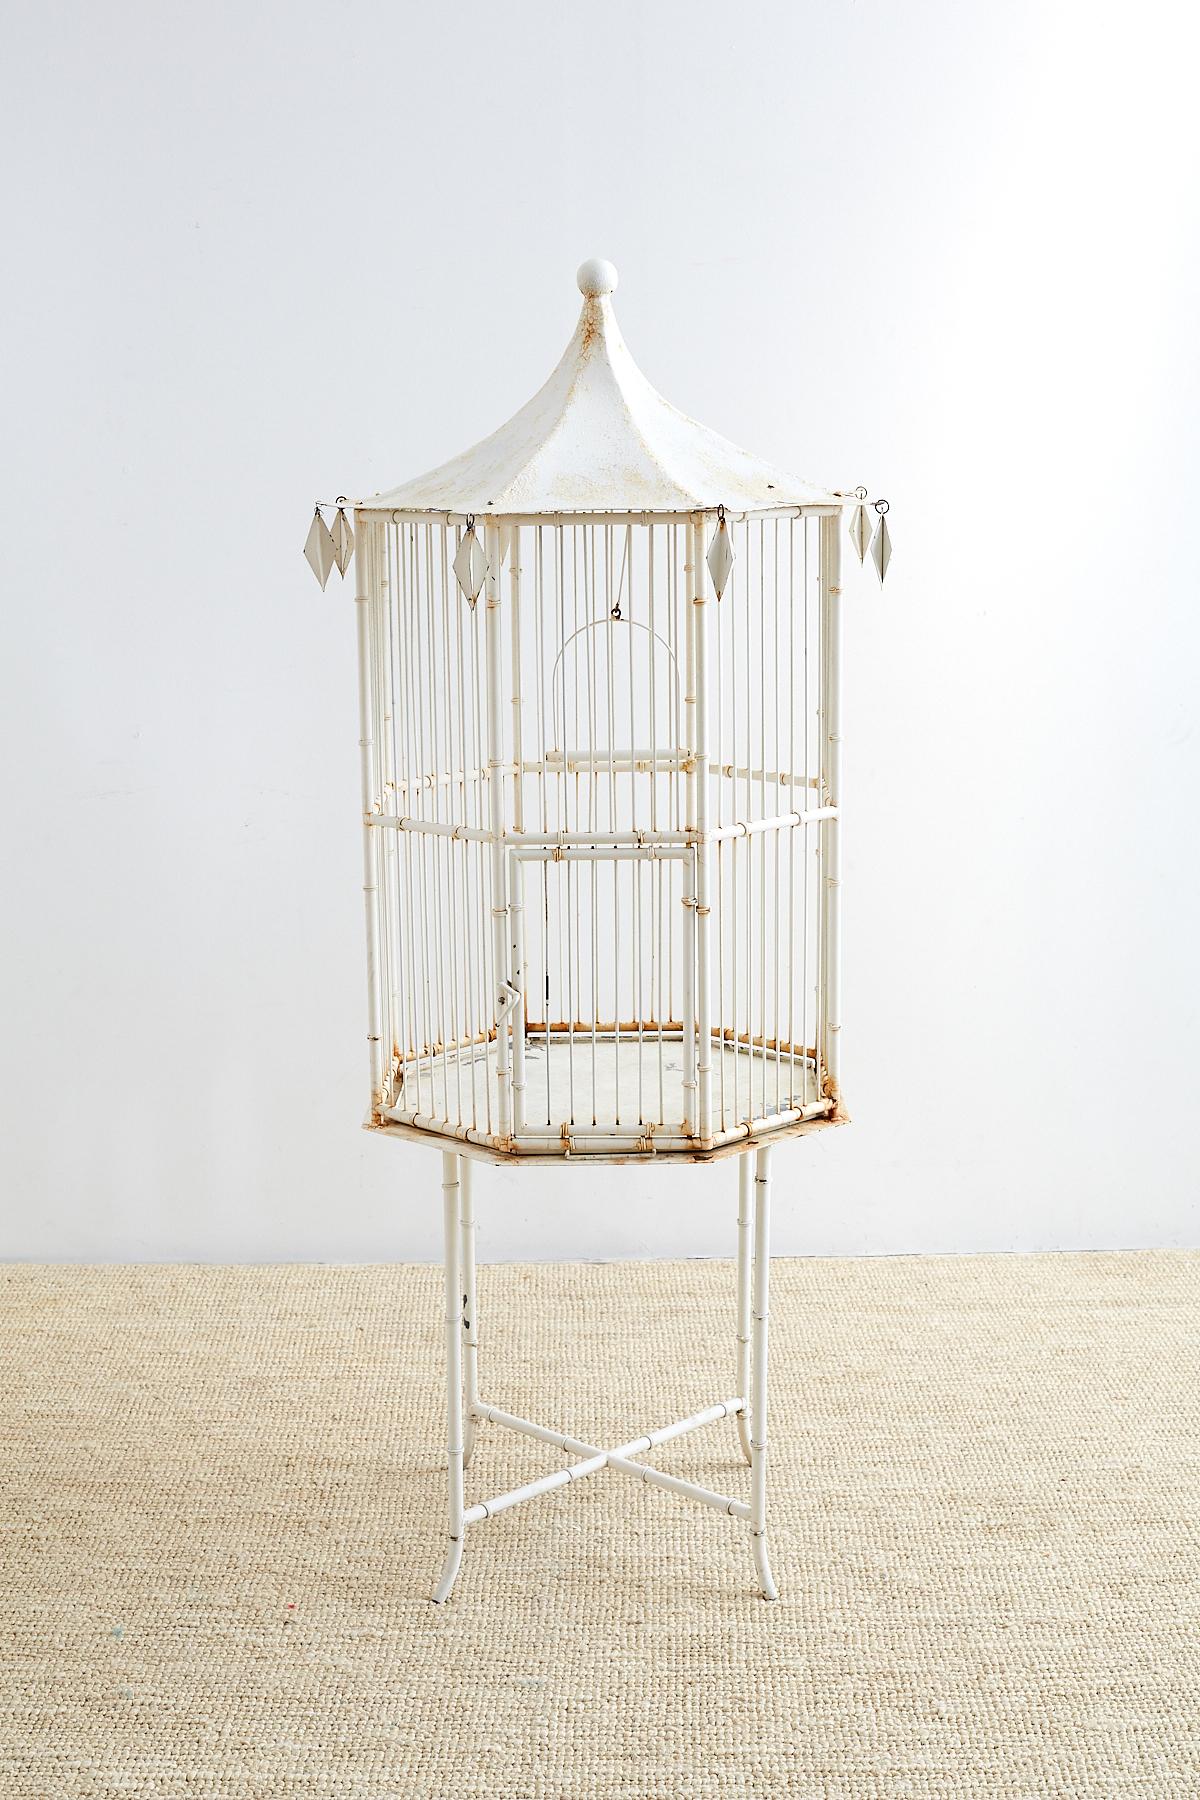 Fantastique cage à oiseaux pagode en faux bambou fabriquée dans le goût du renouveau de la chinoiserie du début du 20e siècle en Europe. Construit en fer forgé avec un motif décoratif en faux bambou et coiffé d'un toit octogonal de style pagode